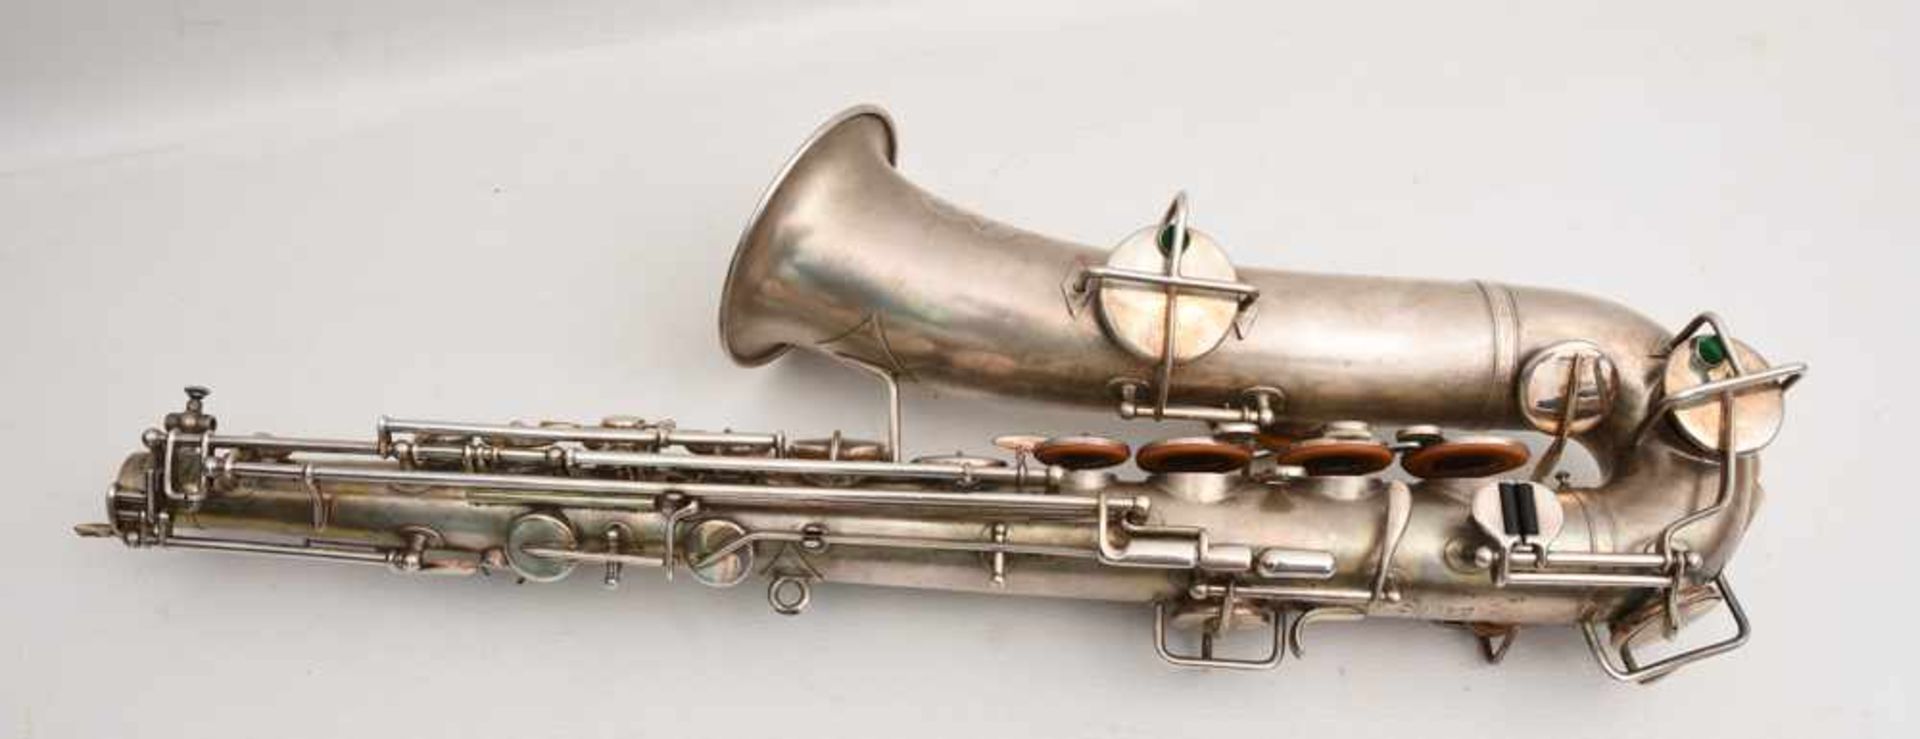 SAXOPHONE MIT KASTEN UND ZUBEHÖR, bez. "the buescher elkhart ind saxophone" nummeriert 163912. d. 12 - Bild 6 aus 9